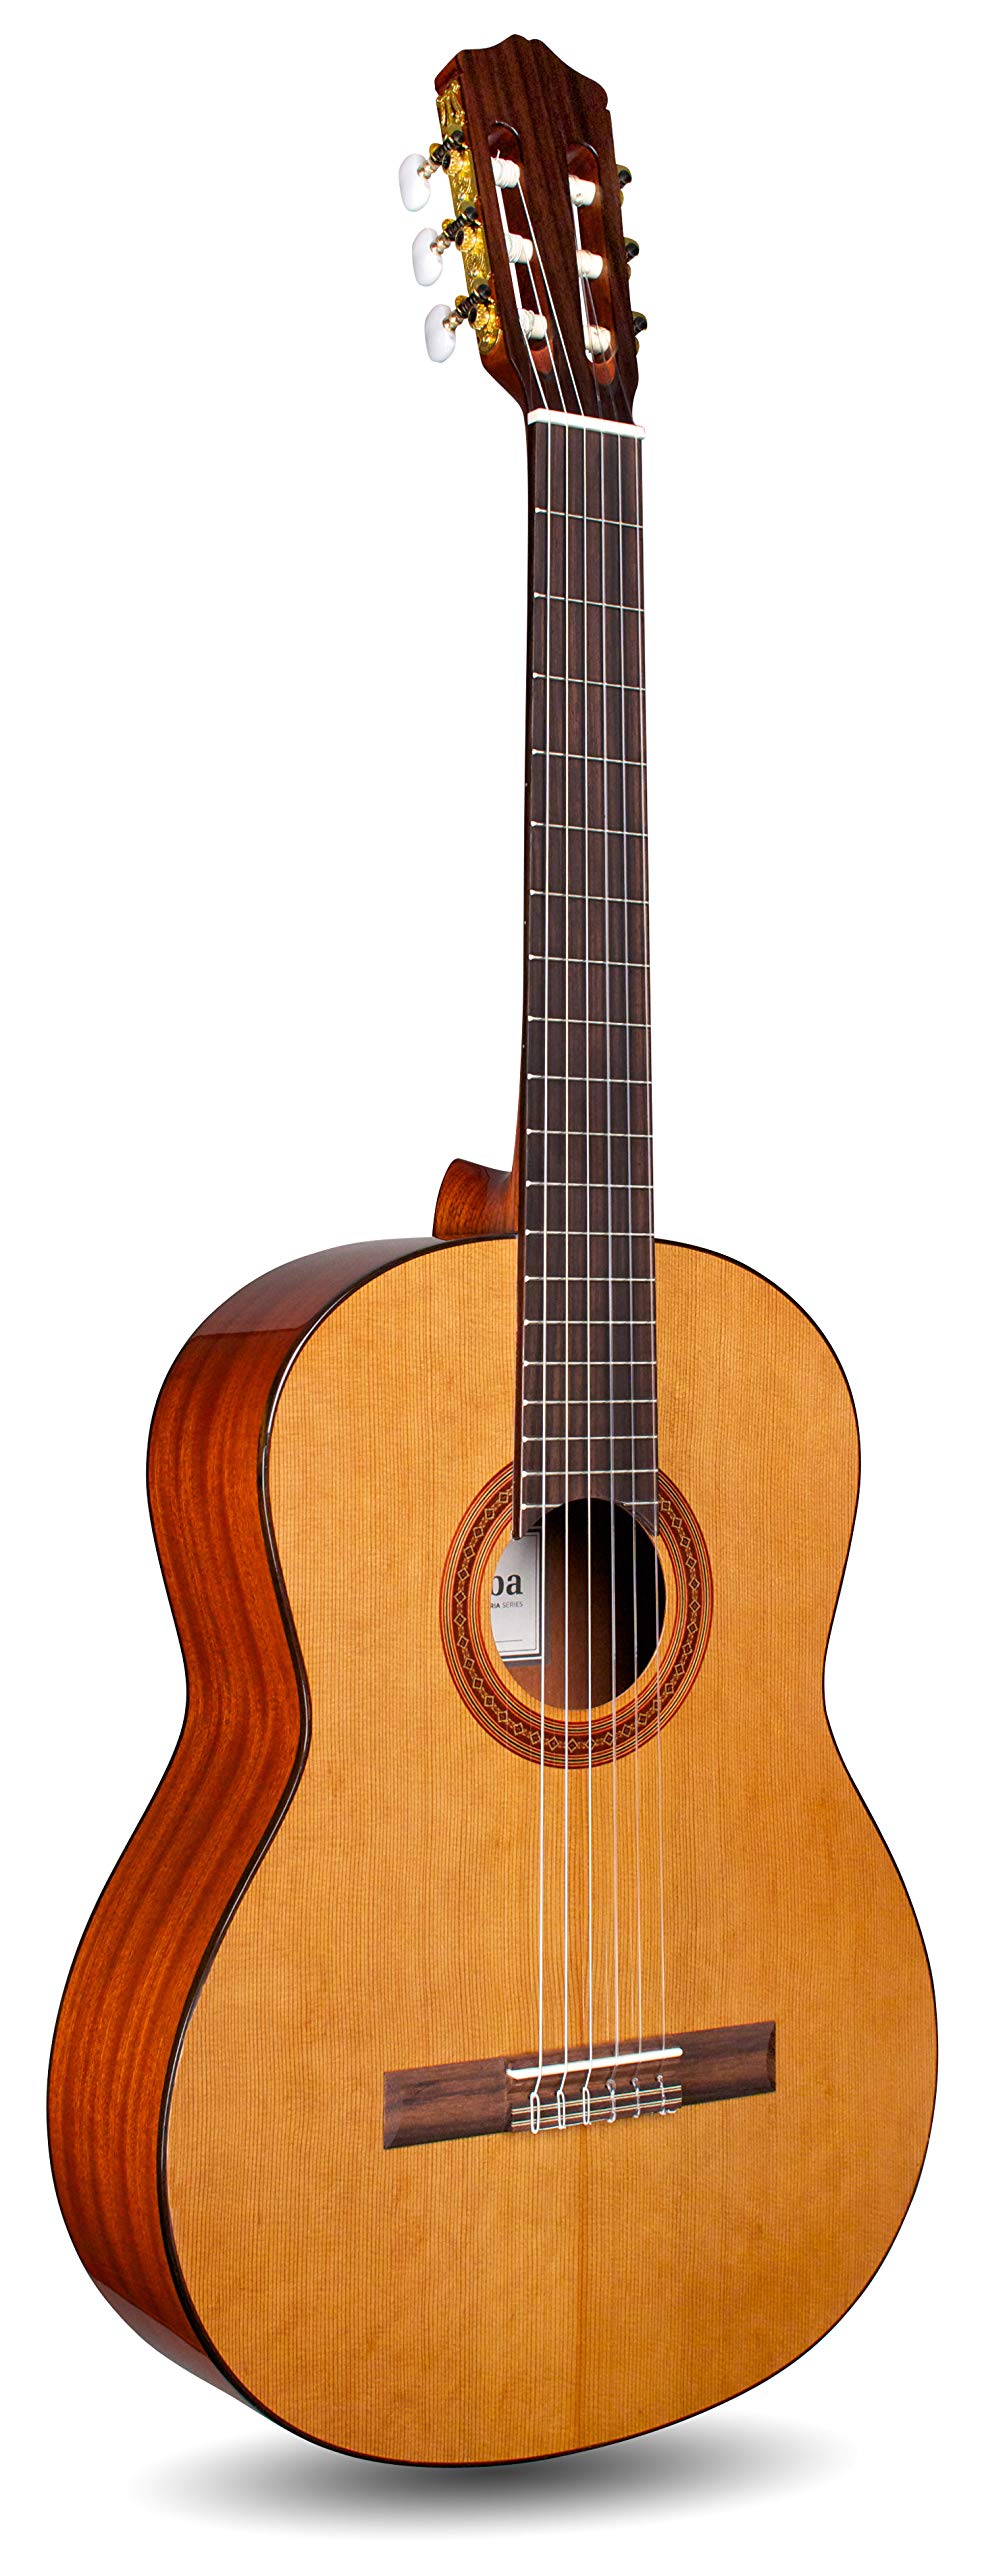 Cordoba Guitars C5 klassische akustische Nylonsaitengitarre